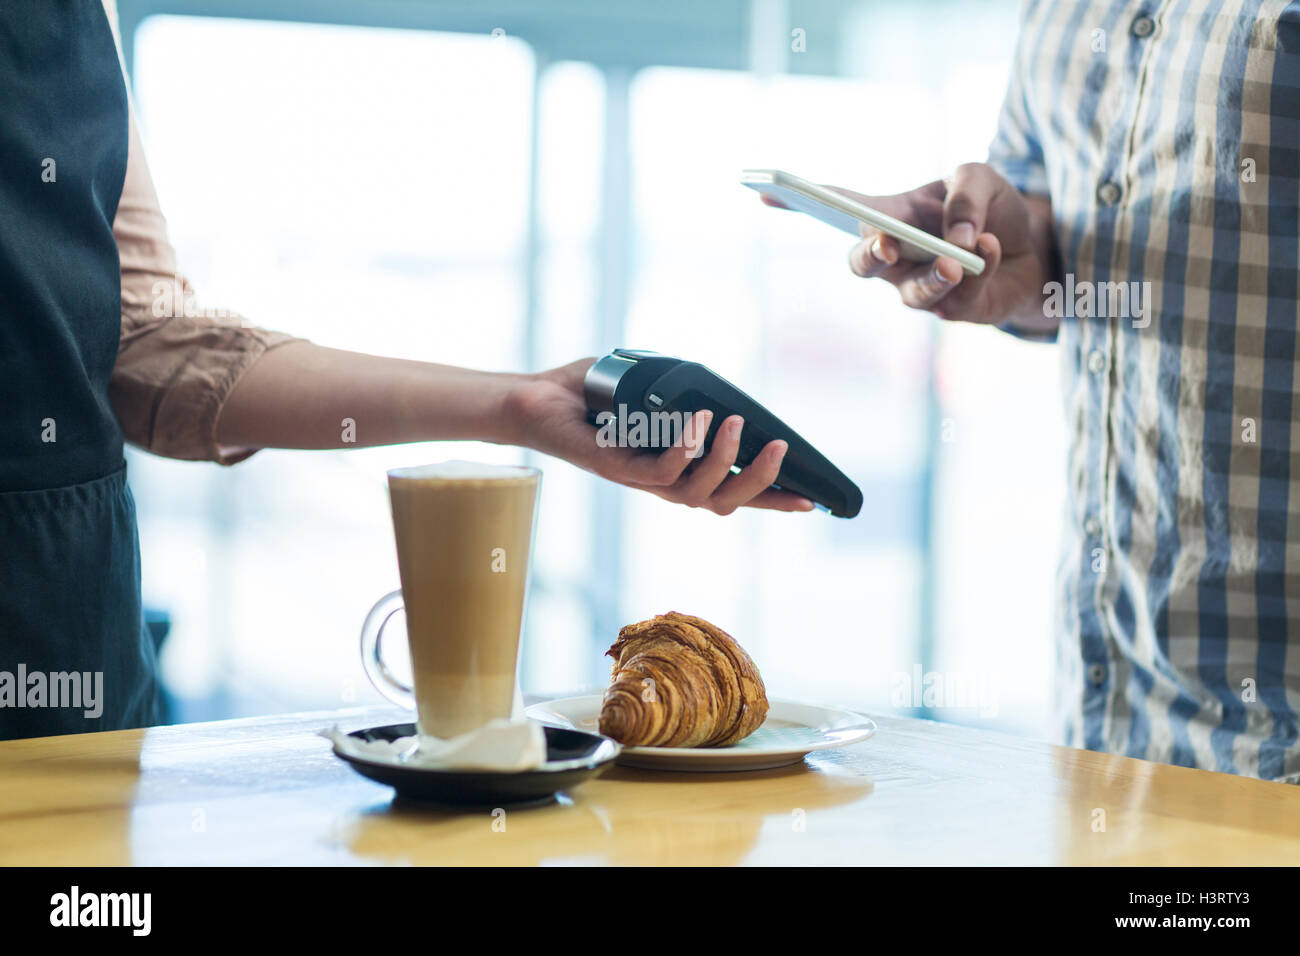 Mann, die Zahlung der Rechnung durch Smartphone mit NFC-Technologie Stockfoto